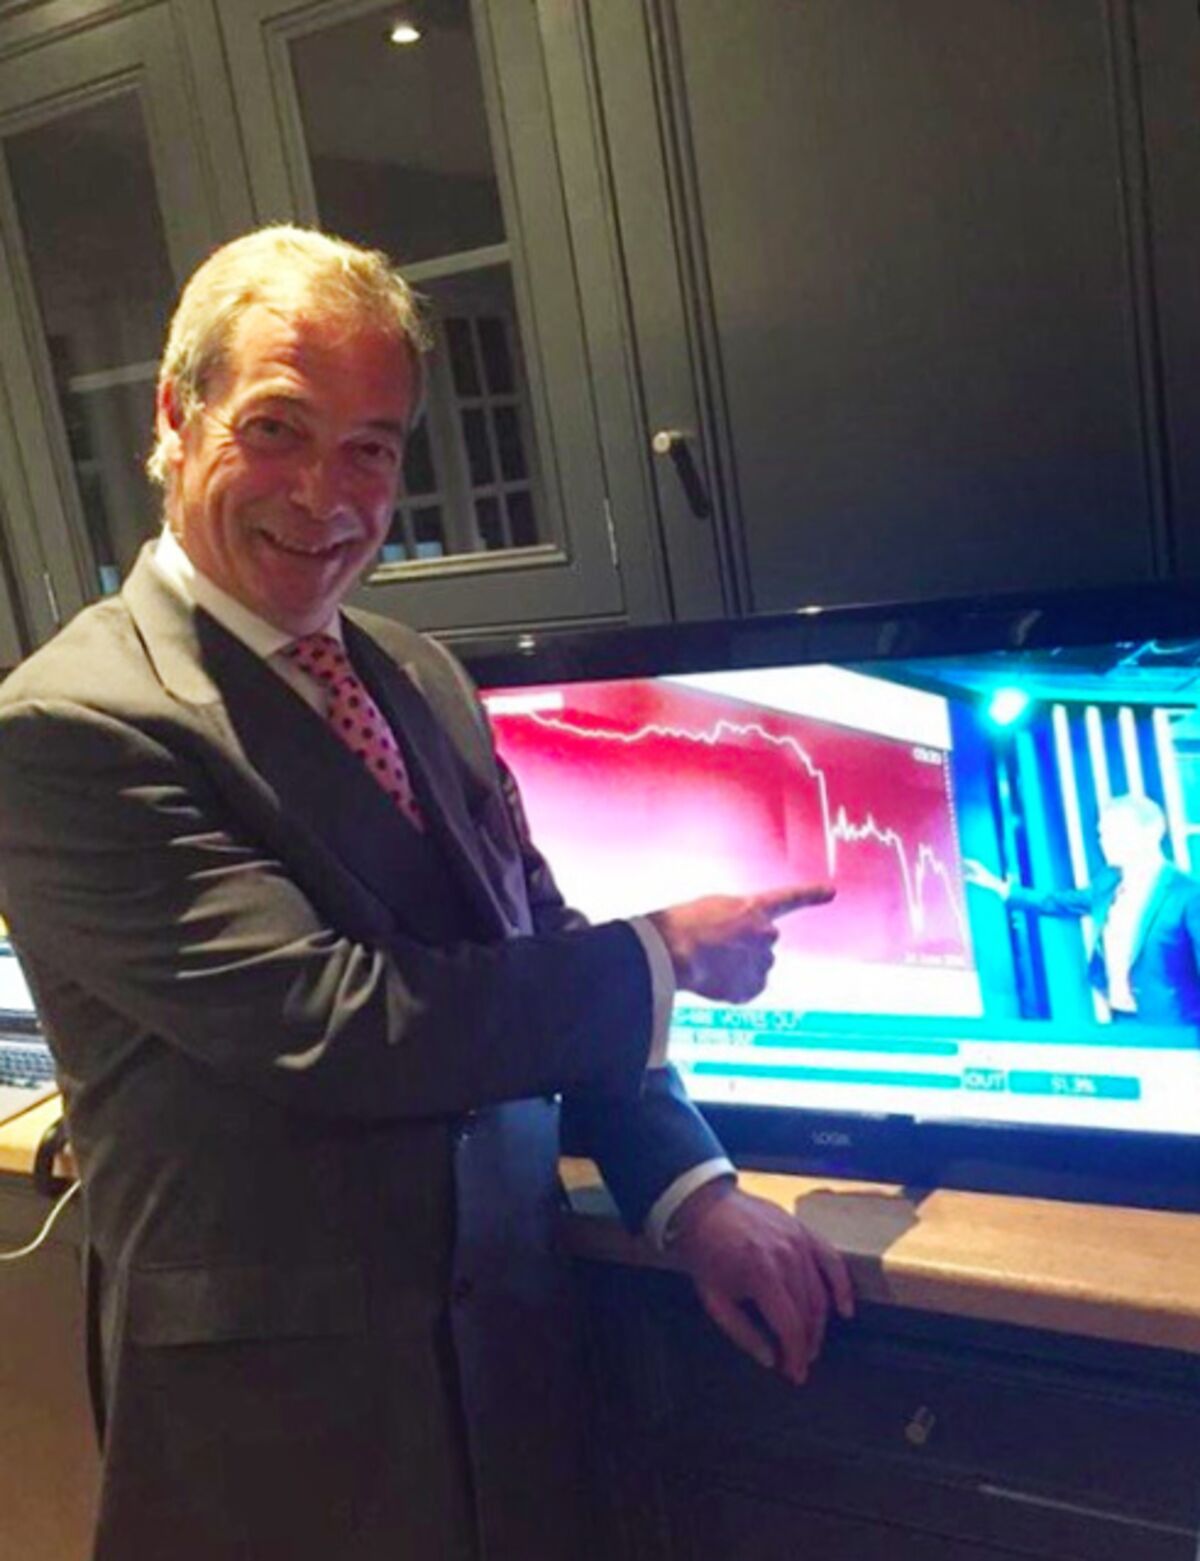 Ukiper Nigel Farage celebrating the crash of British Pound Sterling on morning after Brexit referendum June 2016. (source: Bloomberg Quint)